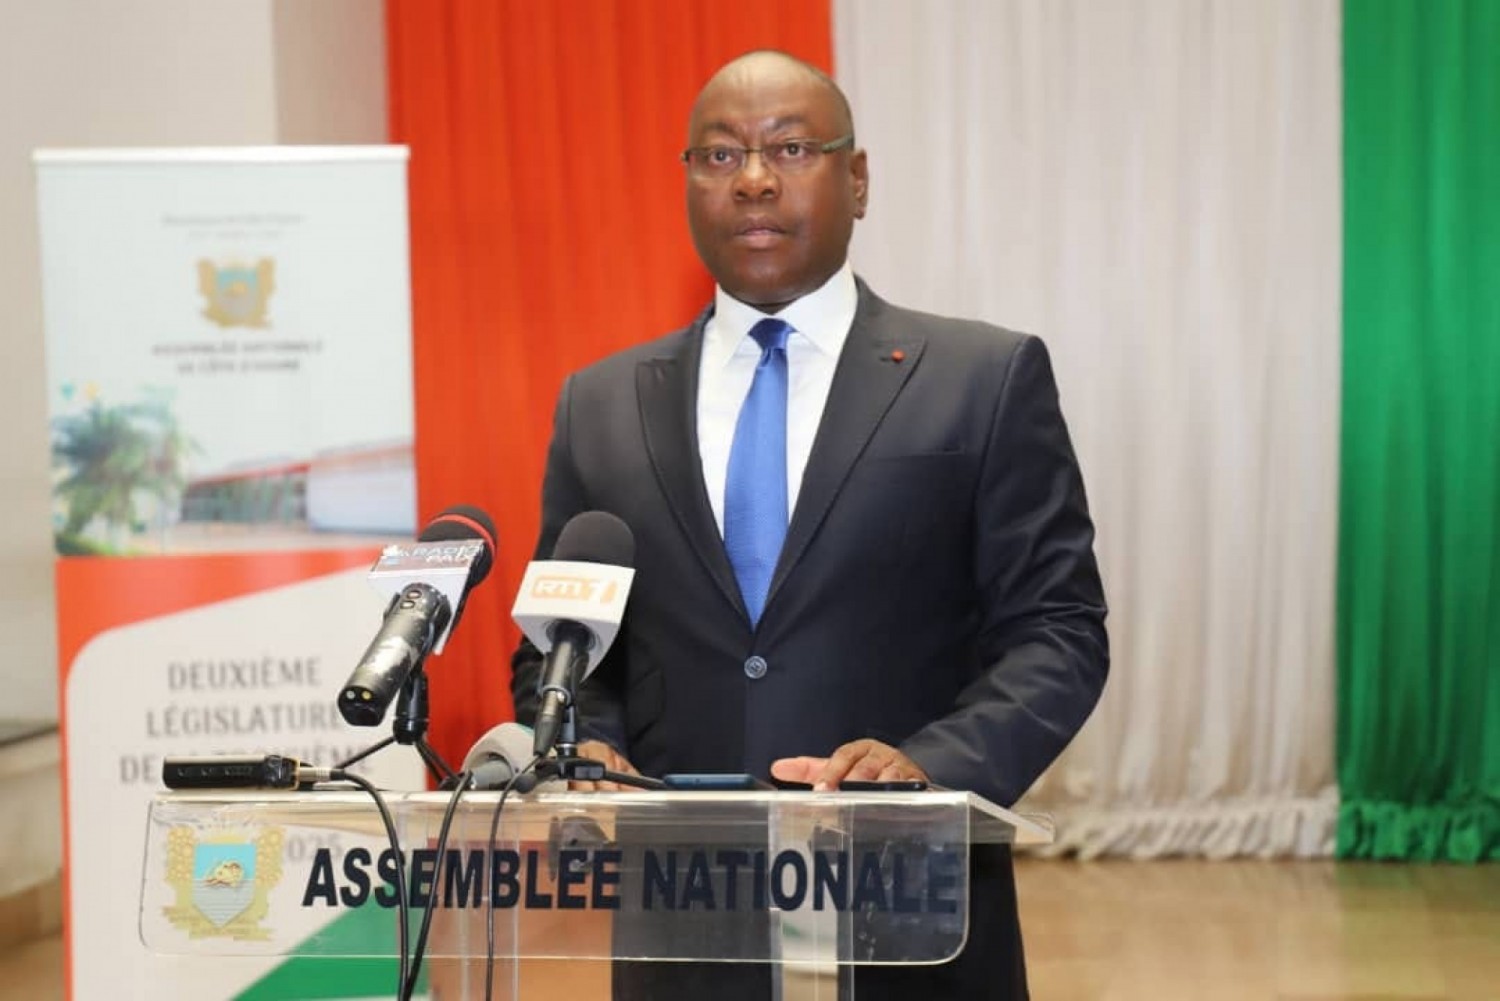 Côte d'Ivoire : Assemblée Nationale, Adama Bictogo dissout le cabinet et par conséquent met  fin aux fonctions des personnels qui y exercent